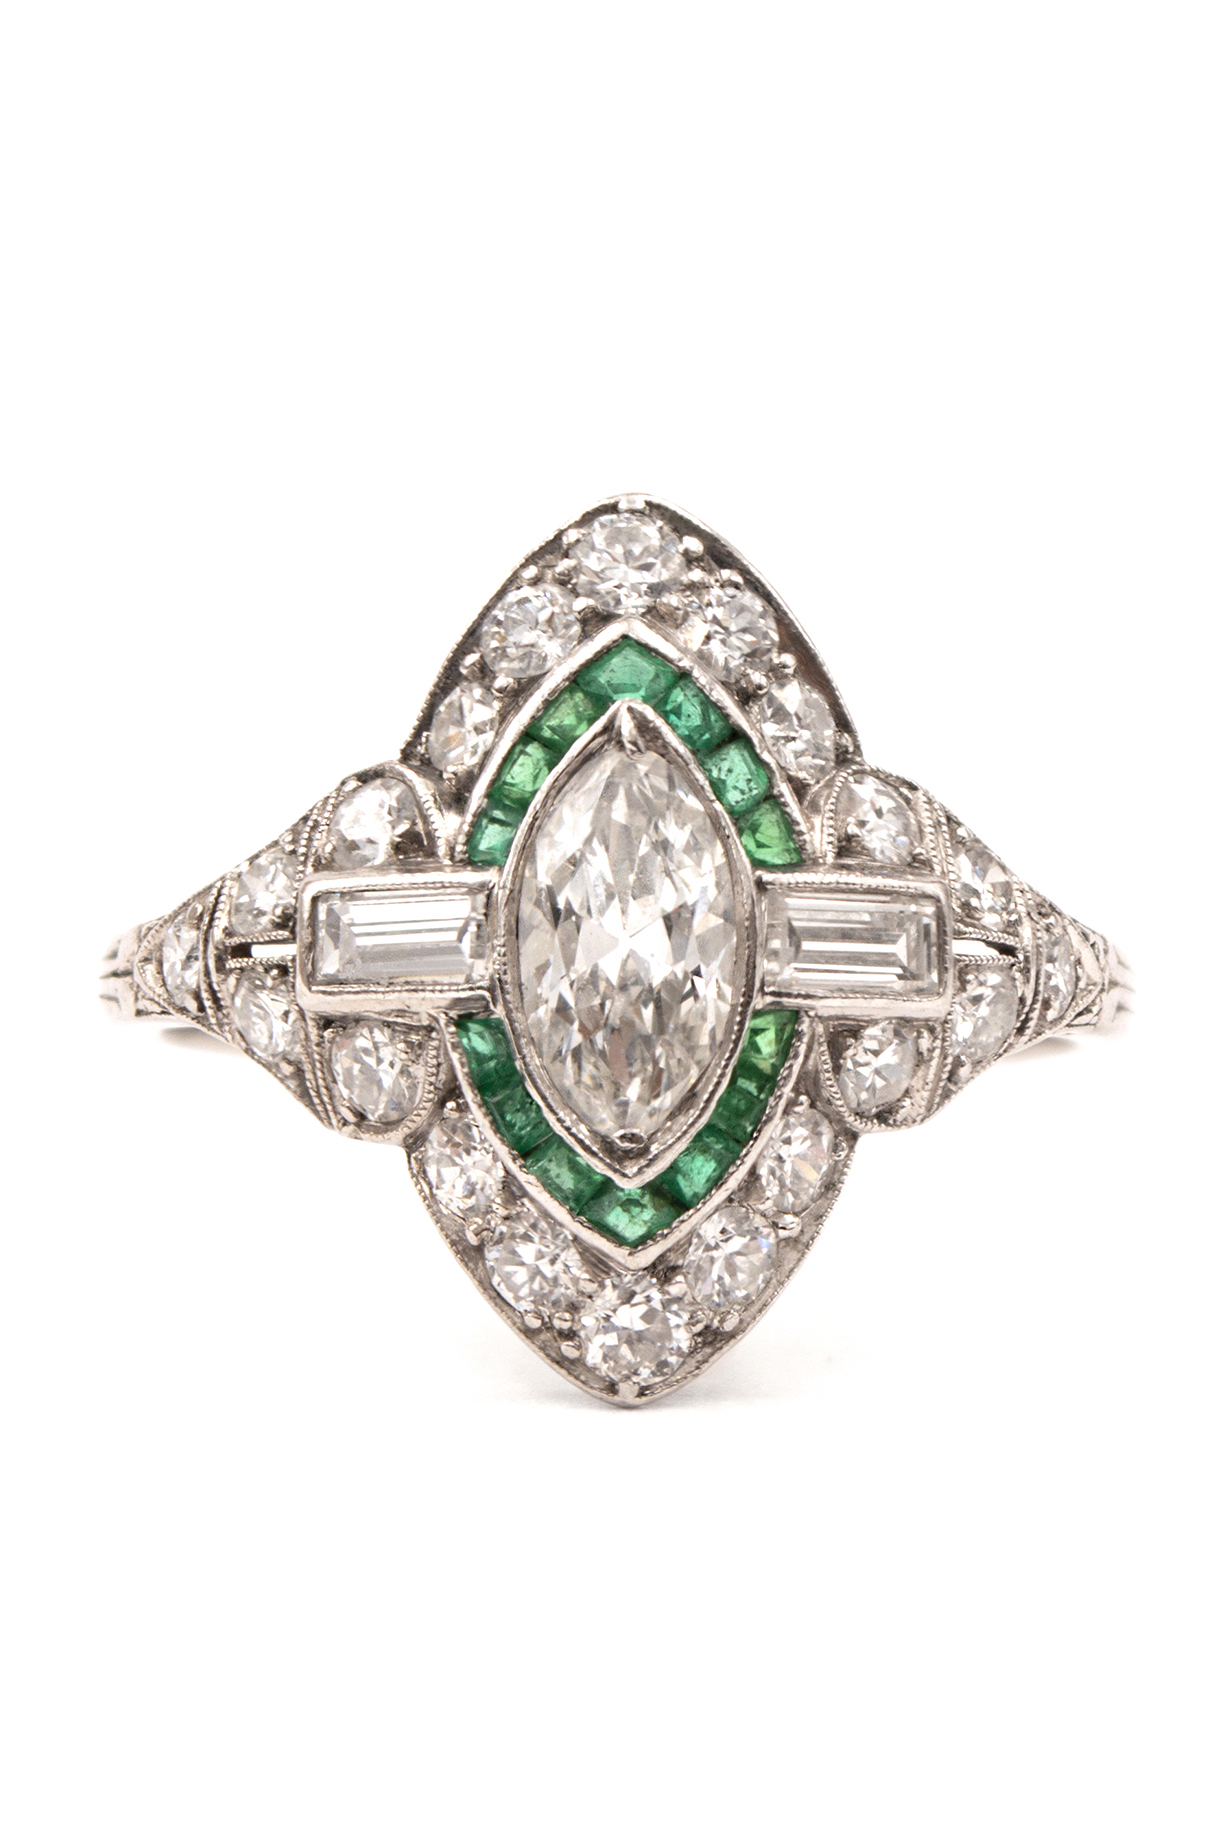 vertegenwoordiger Bekend ijs Art Deco Diamond & Emerald Ring | Sandler's Diamonds & Time | Columbia SC |  Mt. Pleasant